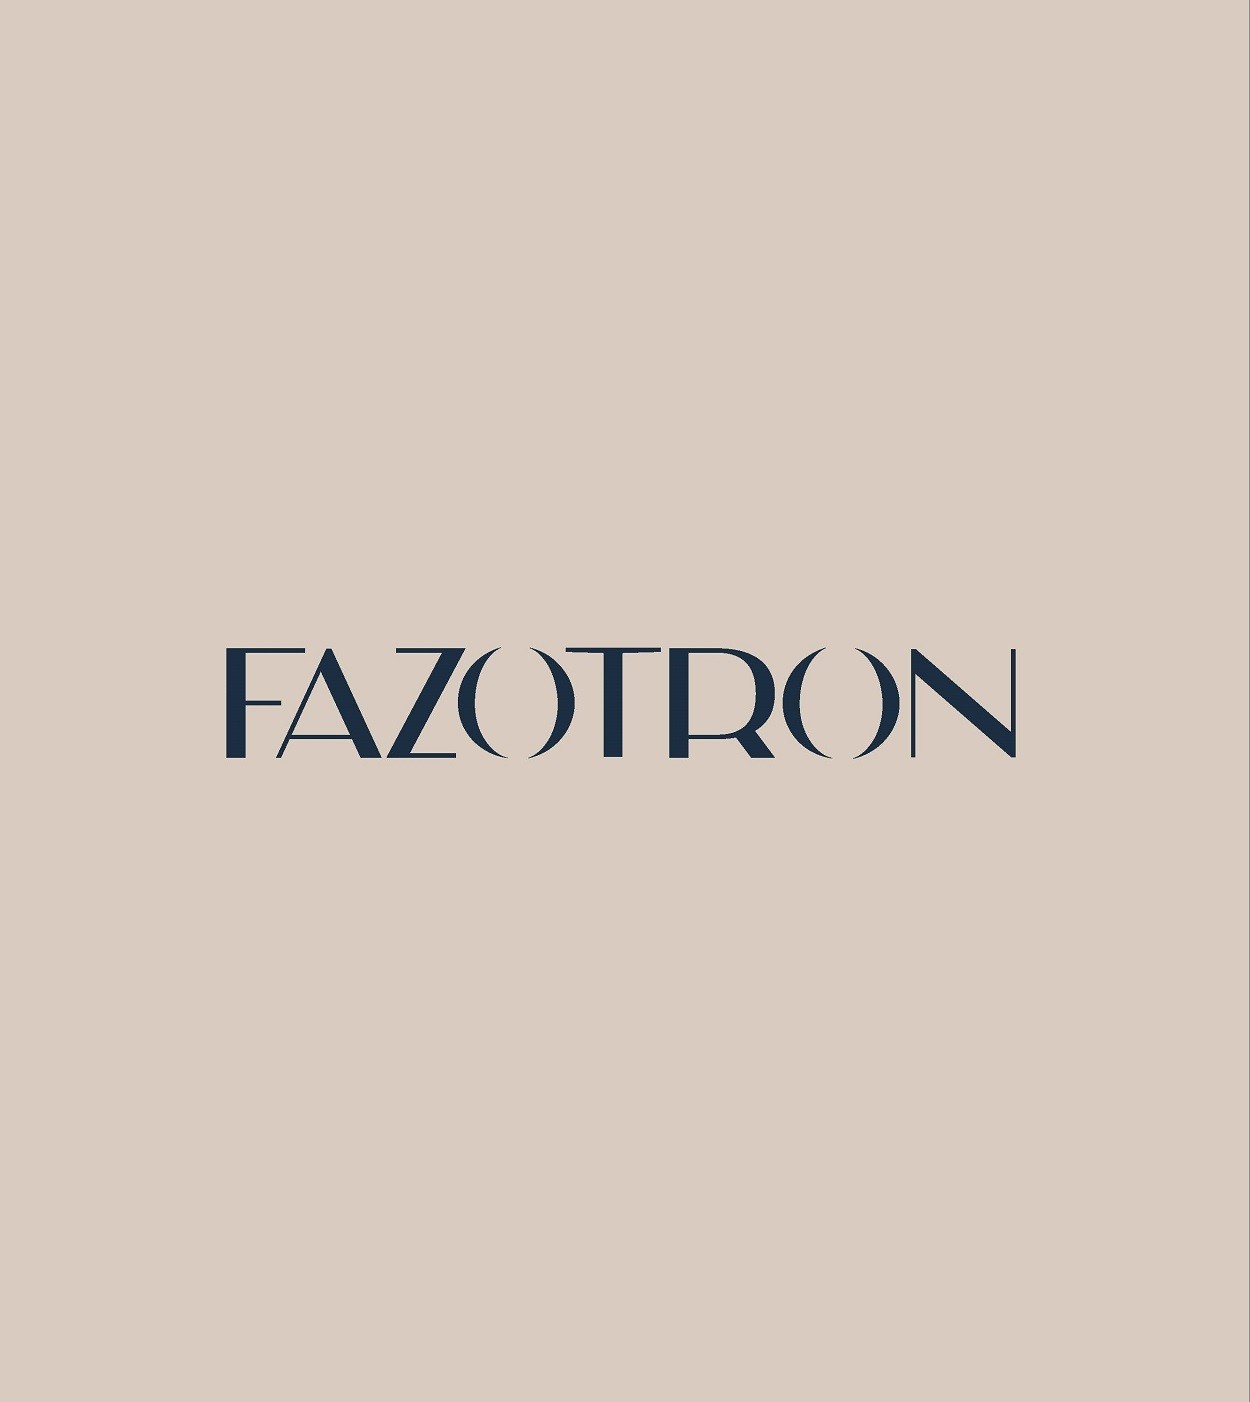 Фото №4: Fazotron - Разработка логотипа и создание бренда в студии брендинга Lobster Agency